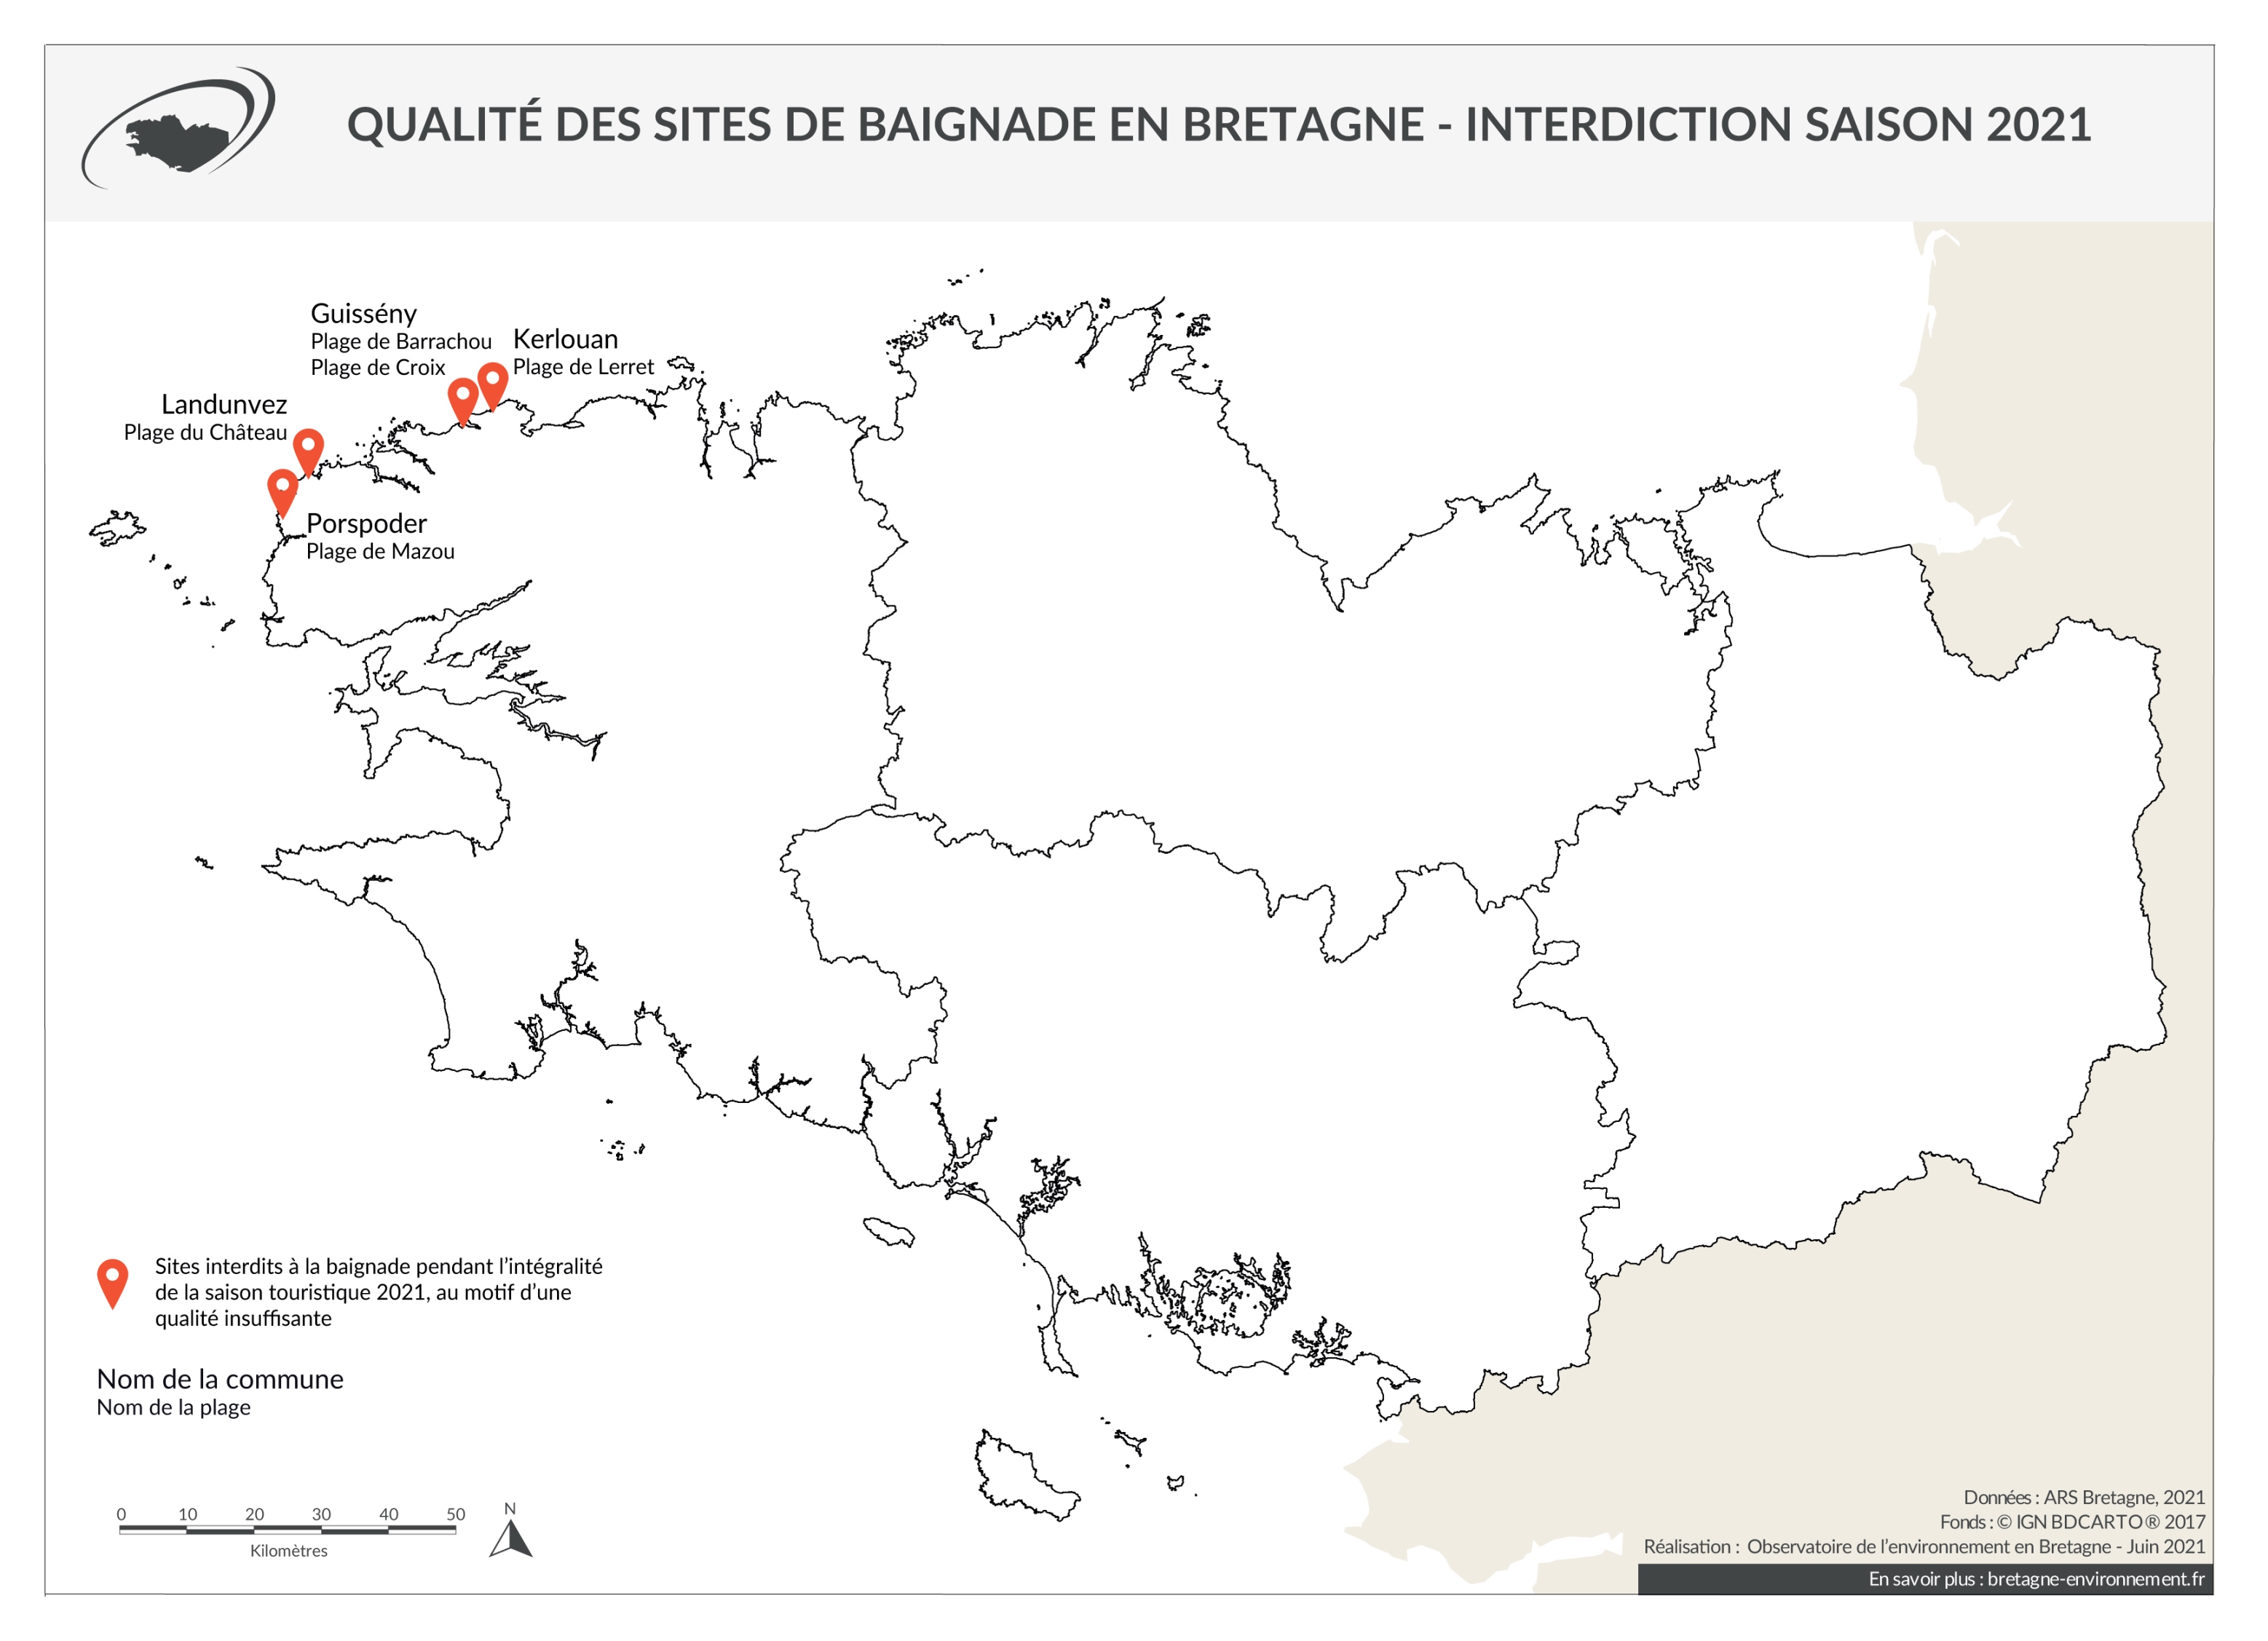 Qualité des eaux de baignade en Bretagne - Interdiction saison 2021